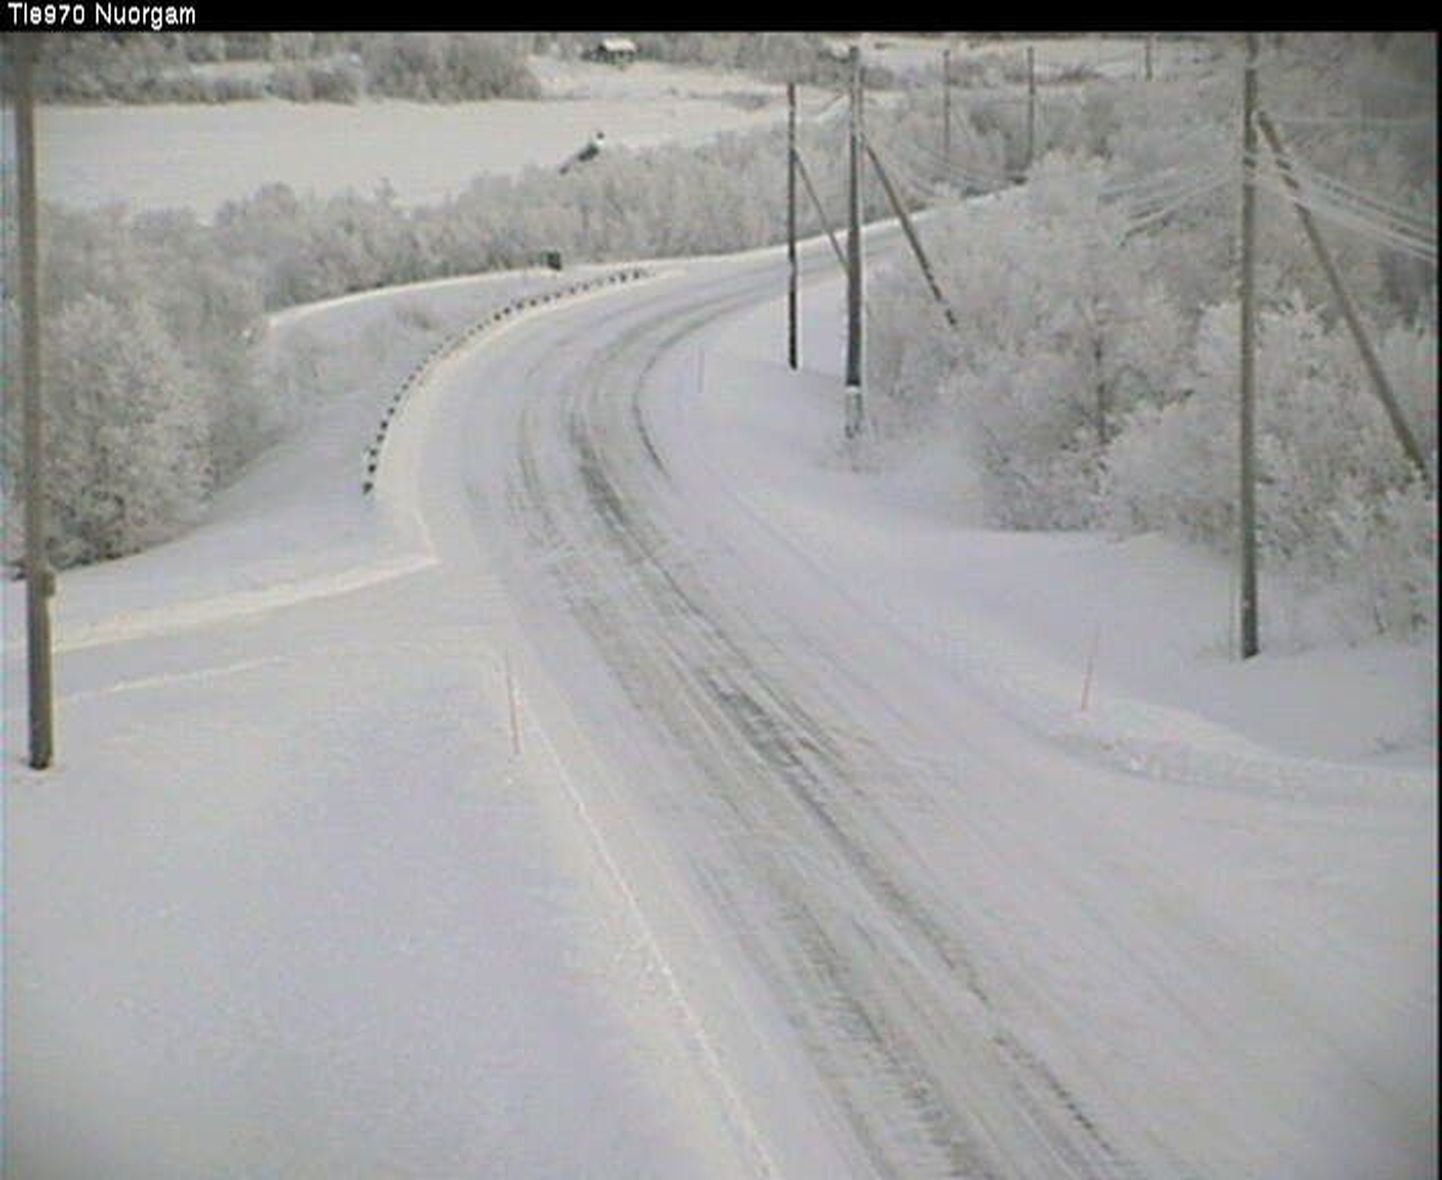 Maanteekaamerast saadud pilt Põhja-Soomes Utsjoelt Nuorgami suunduvast maanteest. Kell 10.50 mõõdeti seal 27,5 külmakraadi.